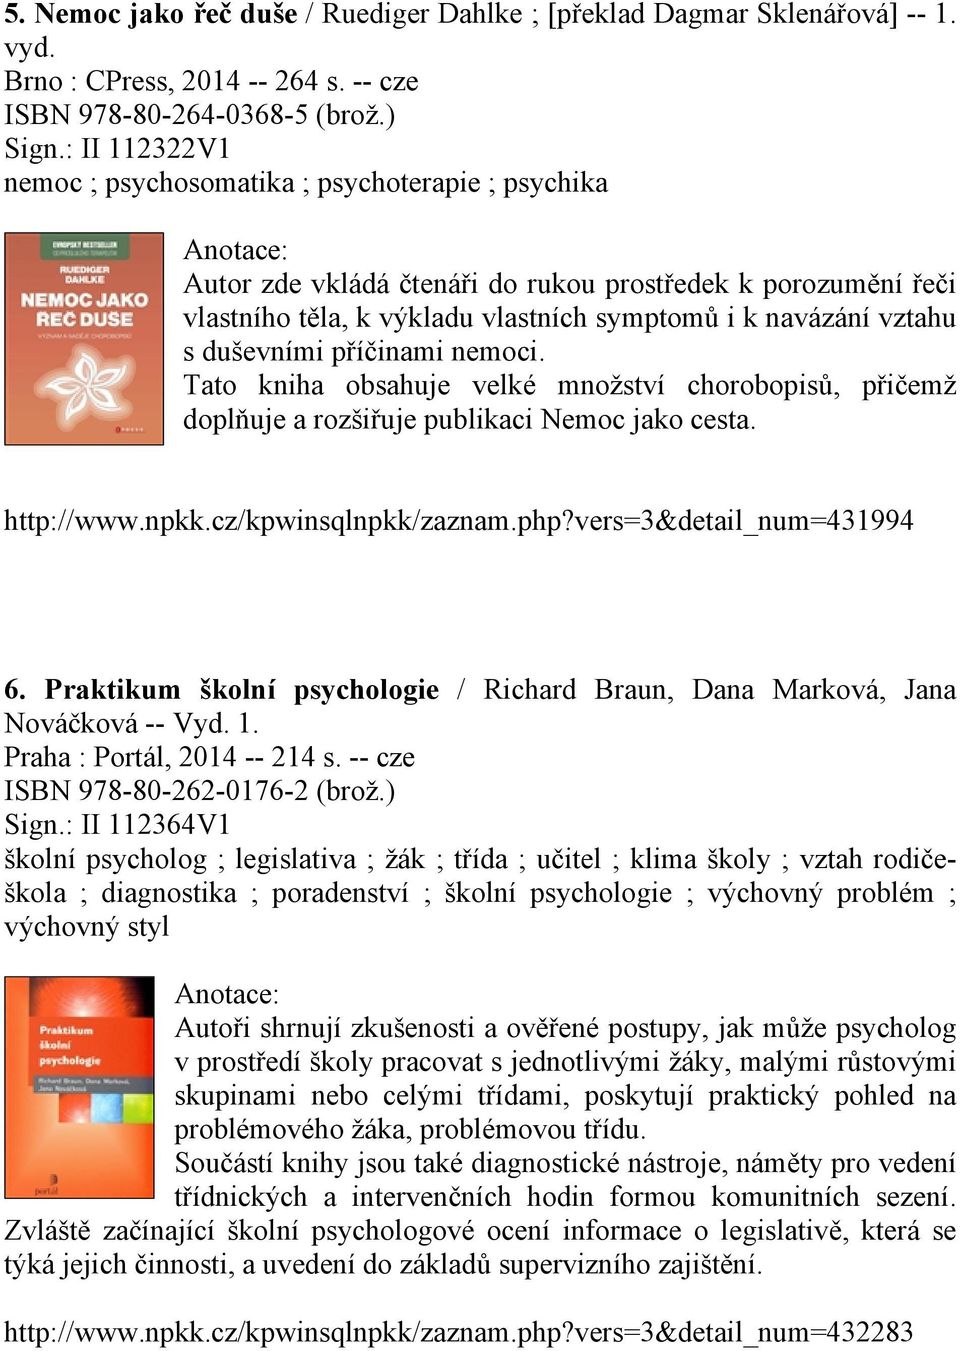 duševními příčinami nemoci. Tato kniha obsahuje velké množství chorobopisů, přičemž doplňuje a rozšiřuje publikaci Nemoc jako cesta. http://www.npkk.cz/kpwinsqlnpkk/zaznam.php?